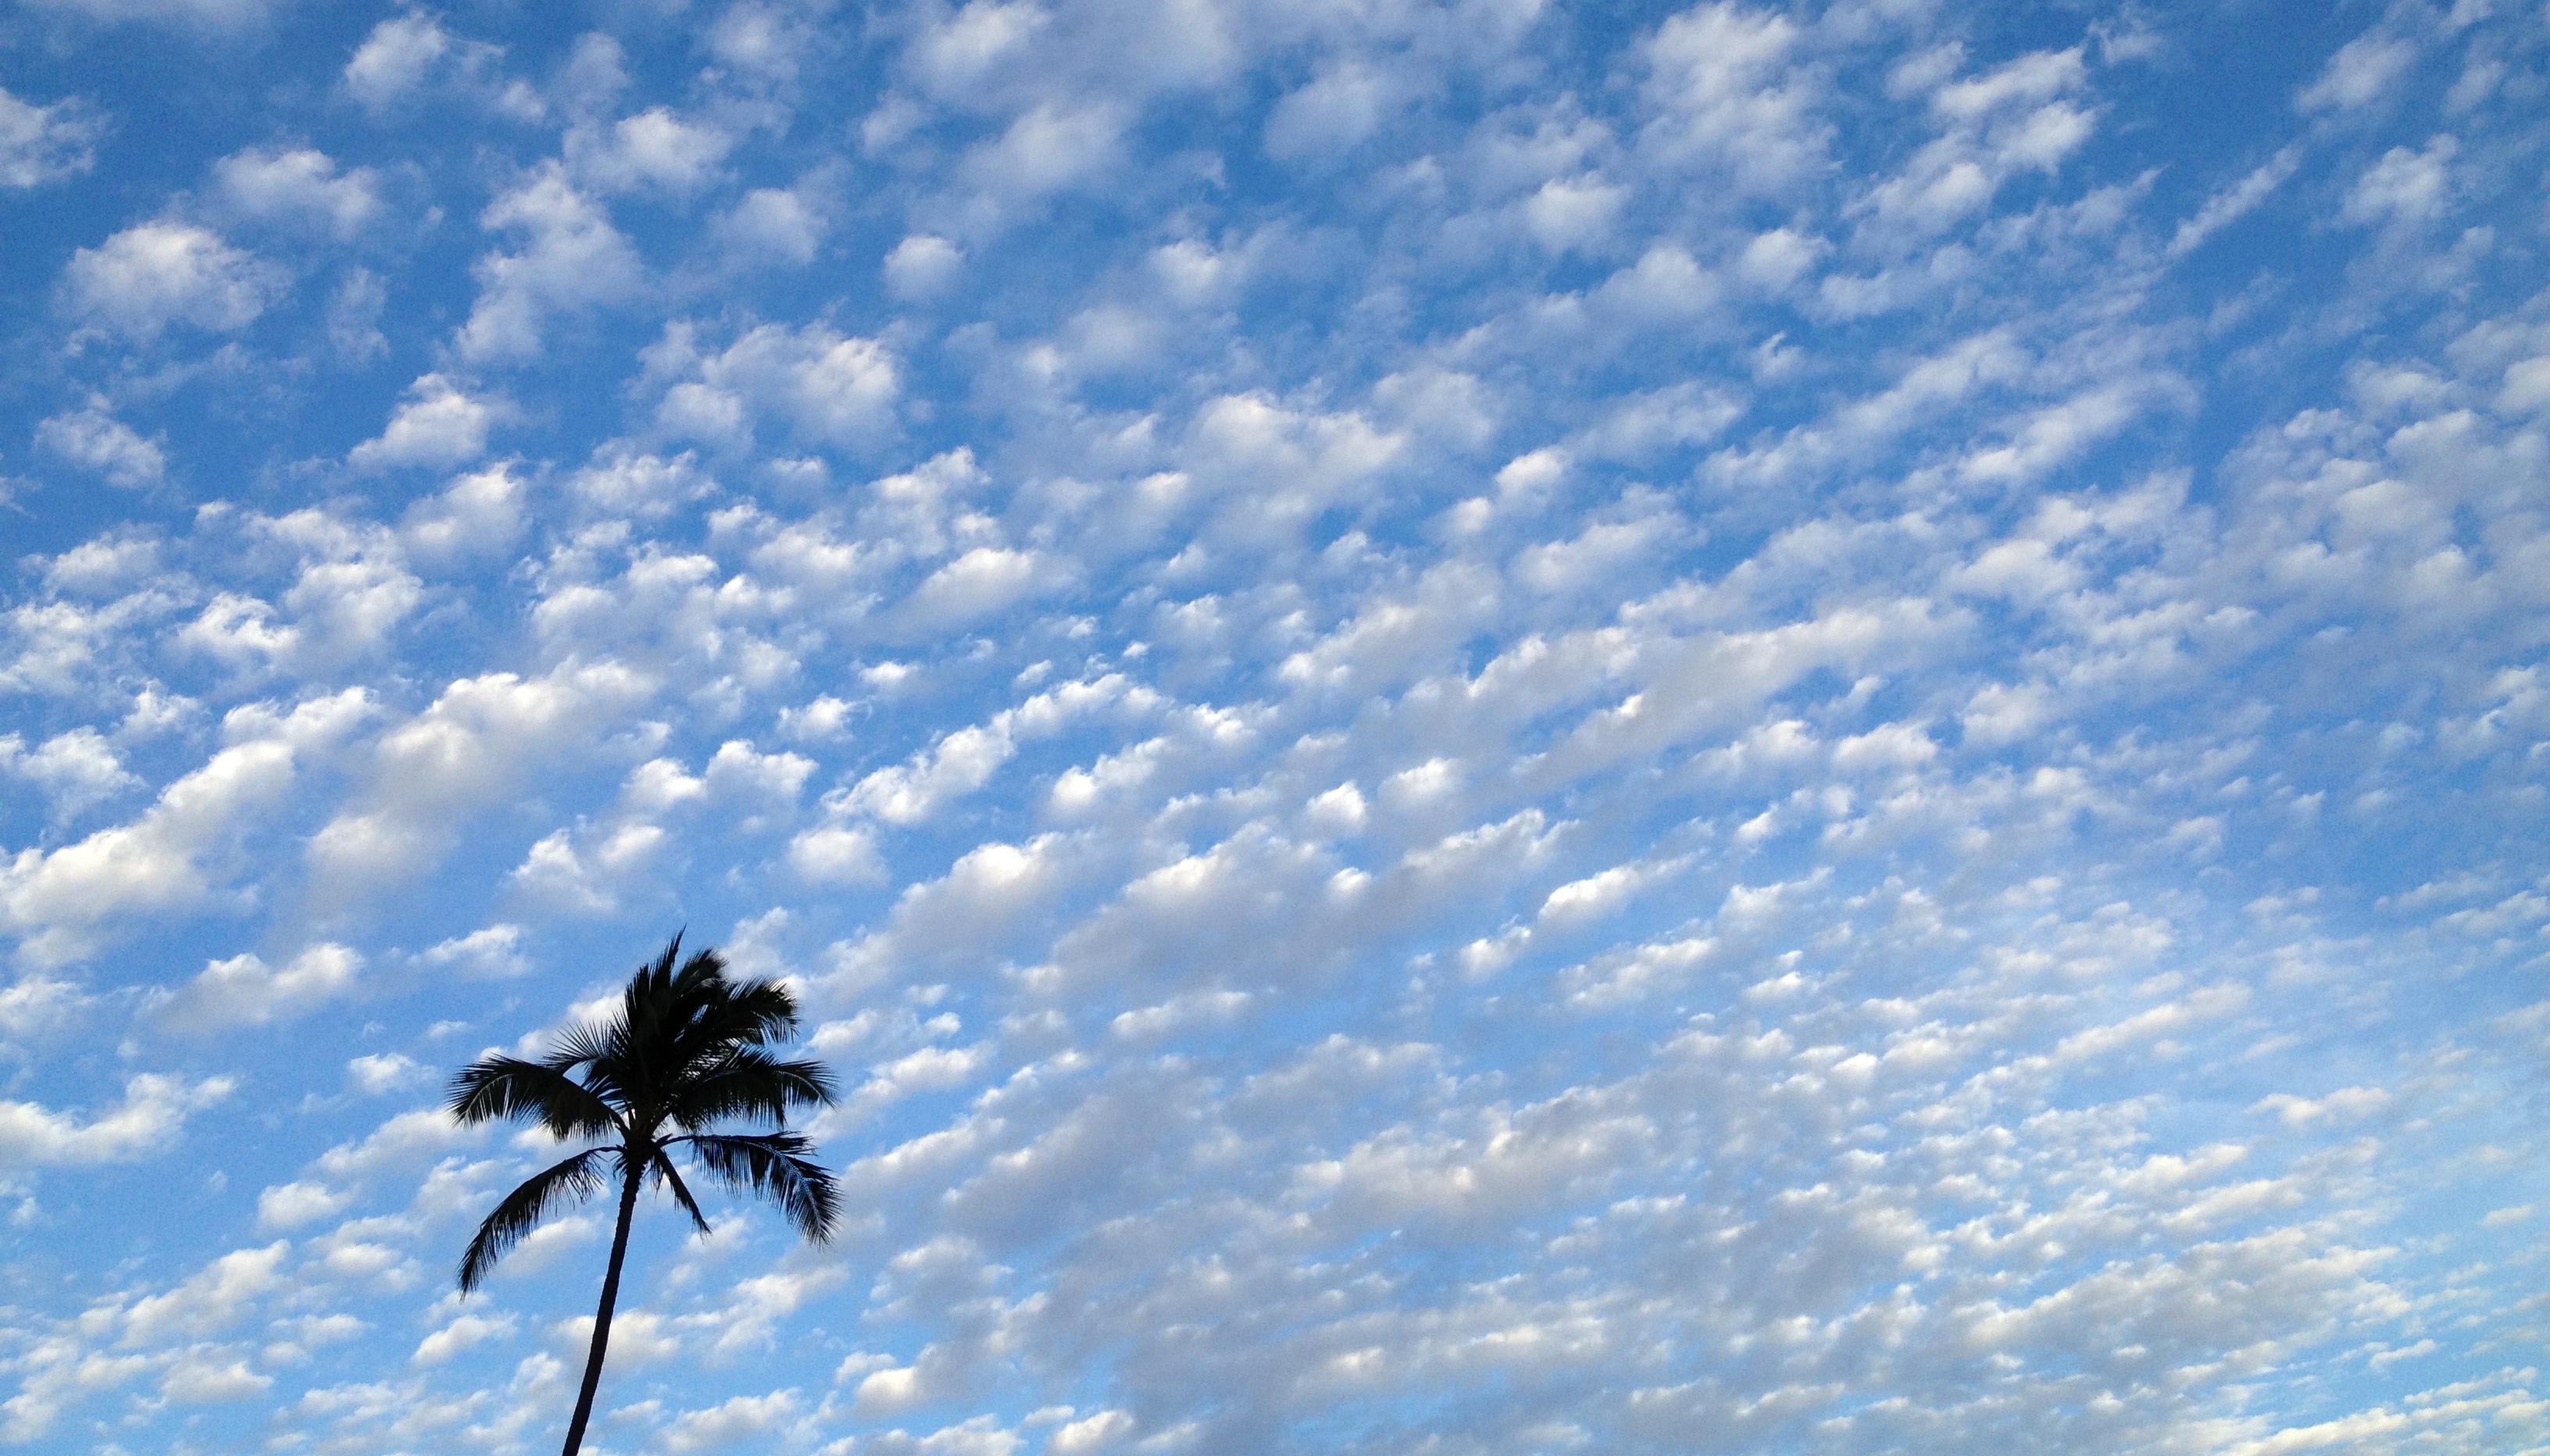 File:Palm tree blue Maui sky and clouds.jpg - Wikimedia Commons